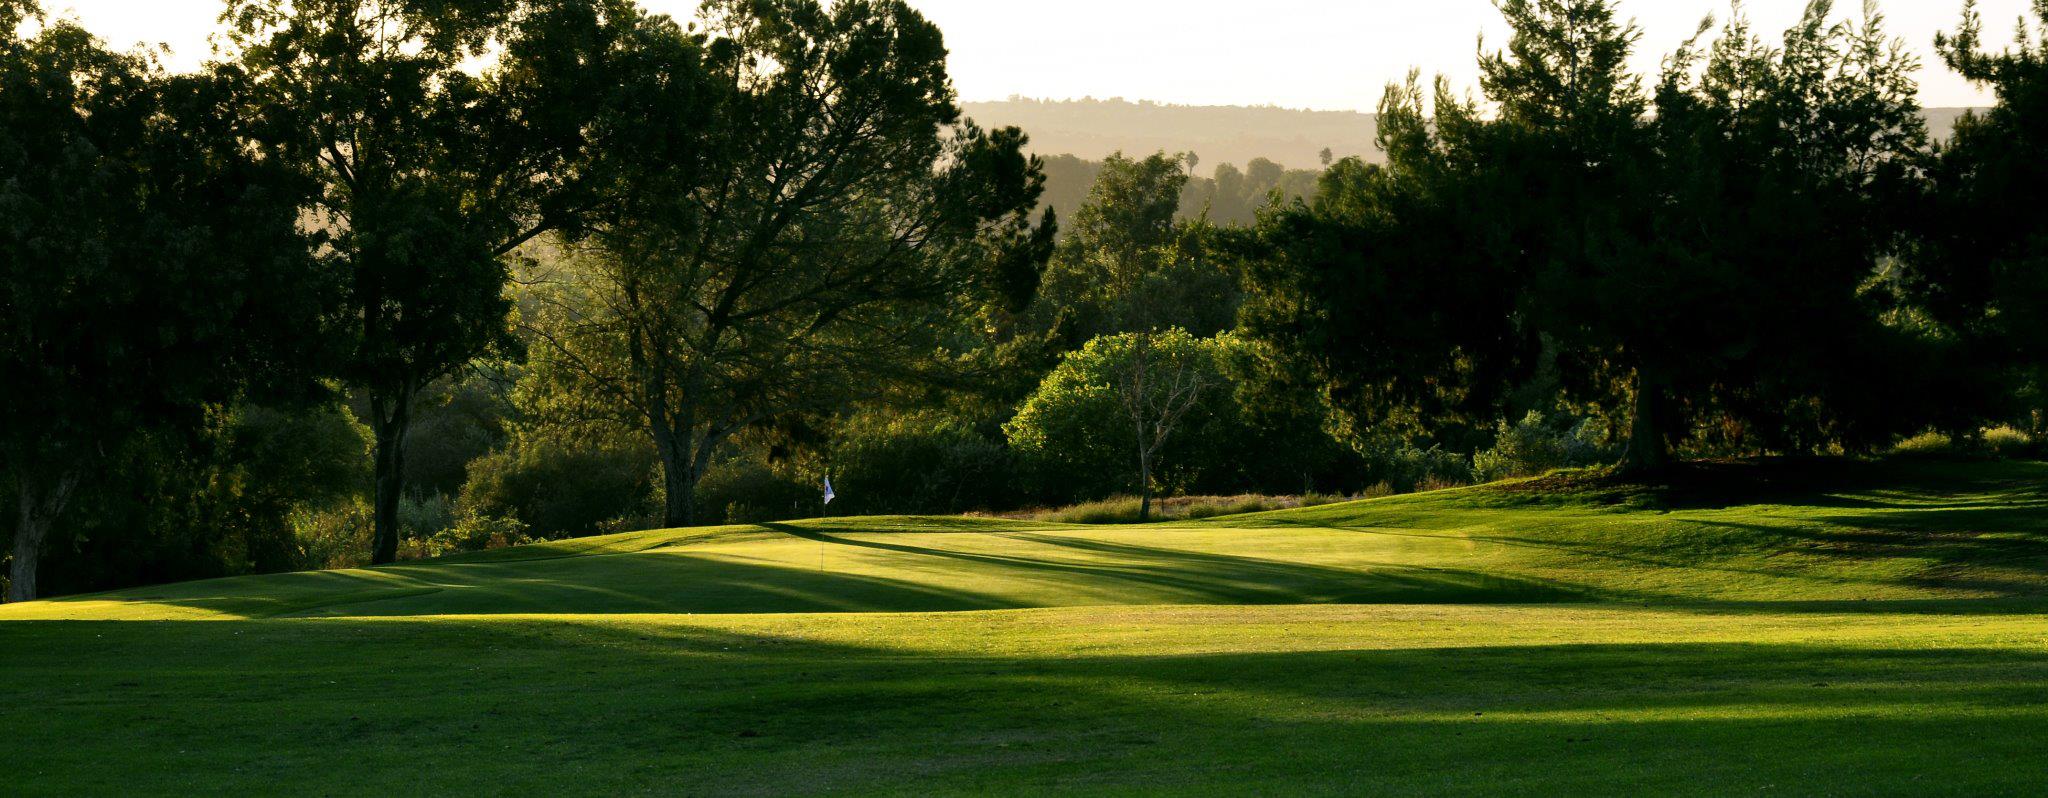 View of Jurupa Hills golf course green